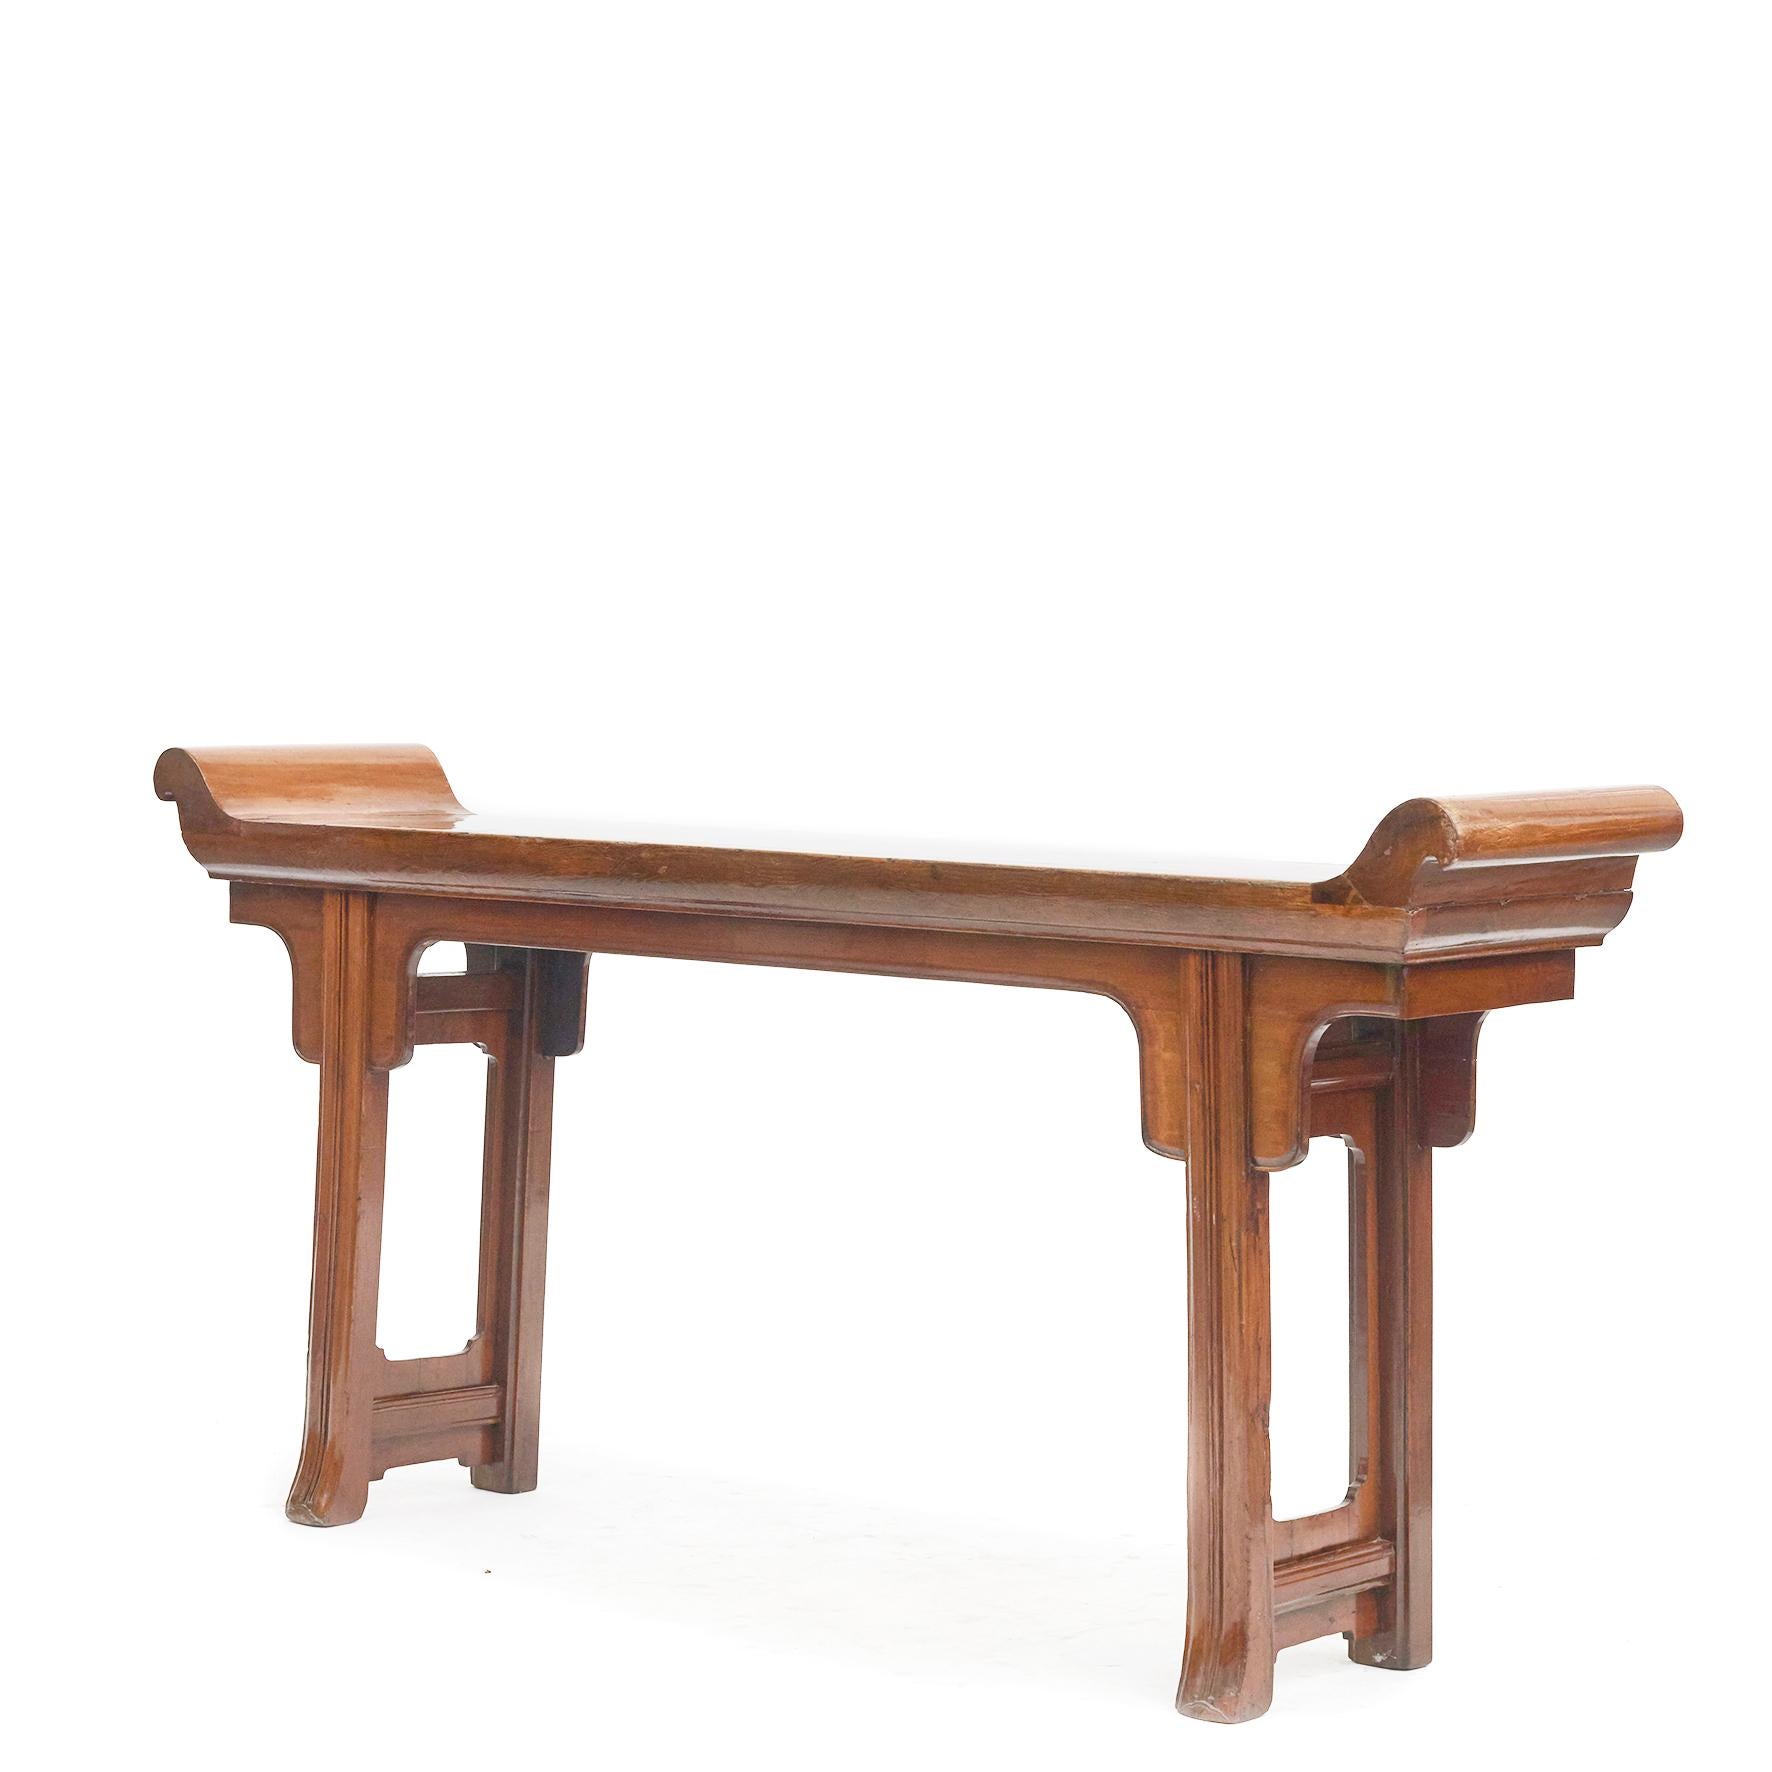 Eine seltene chinesische Qing-Dynastie Zeitraum Altar Konsole Tisch.
Der Altartisch ist aus Zypressenholz gefertigt, einer Holzart mit einem warmen Farbton und schöner Maserung.
Die Tischplatte ist aus einem Stück Holz gefertigt und weist die